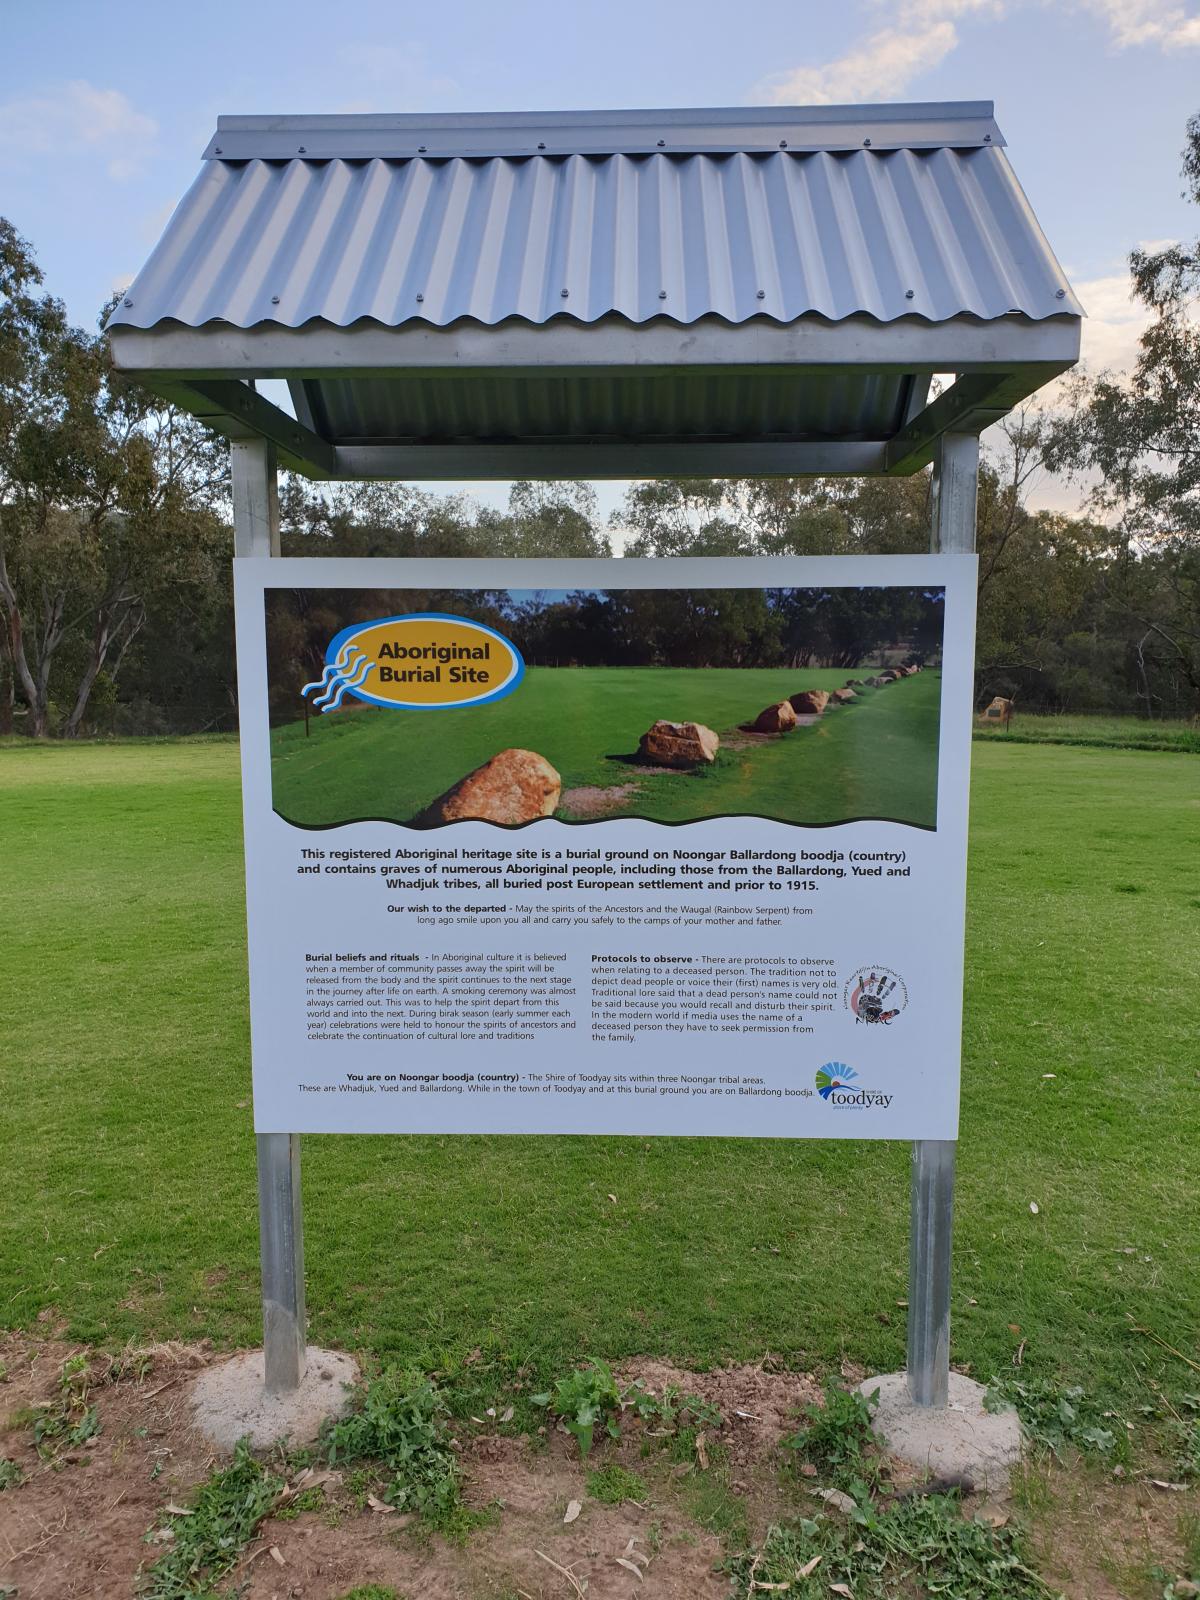 Aboriginal burial site sign at Toodyay